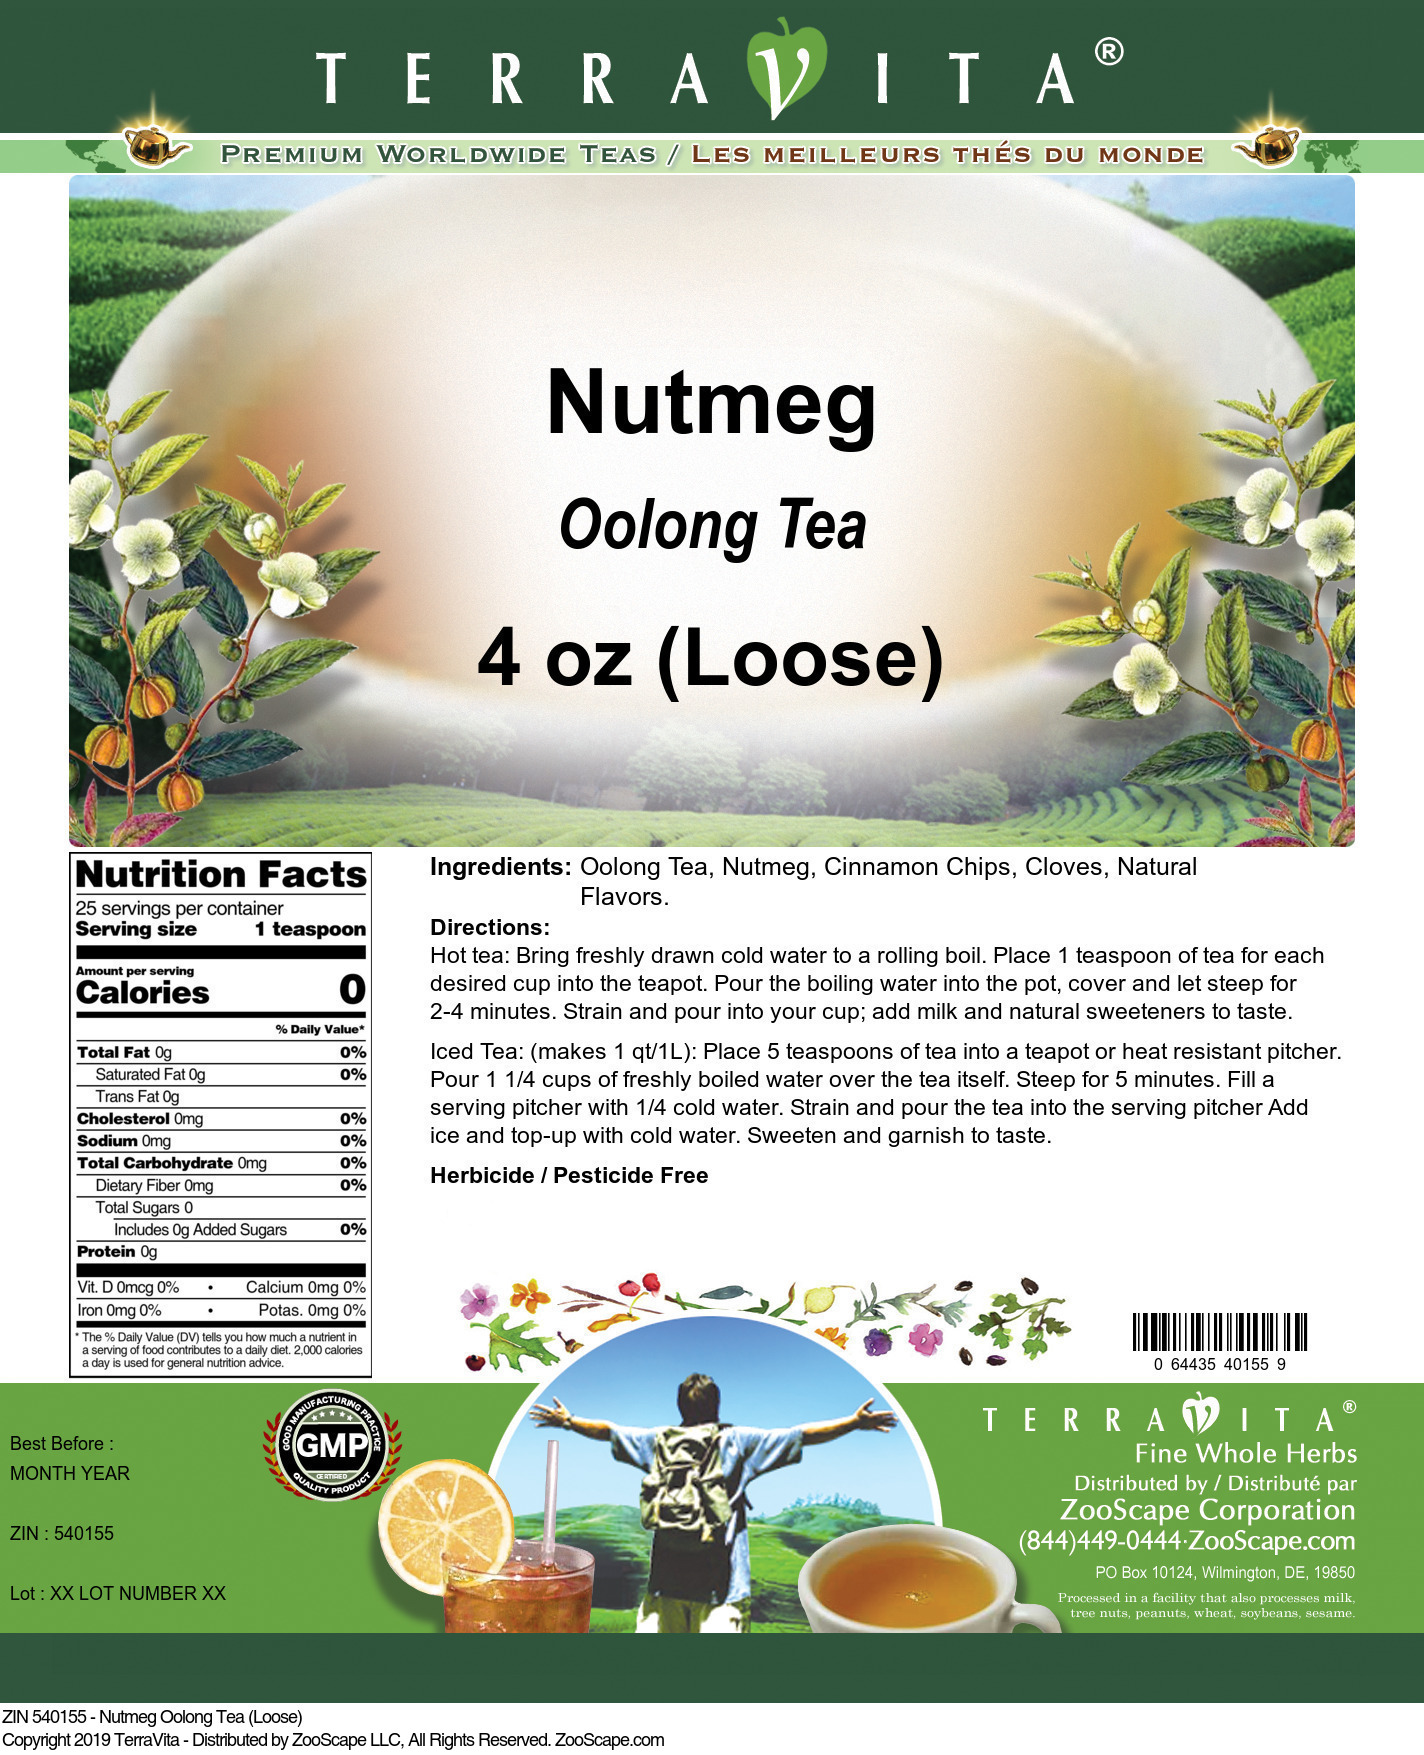 Nutmeg Oolong Tea (Loose) - Label